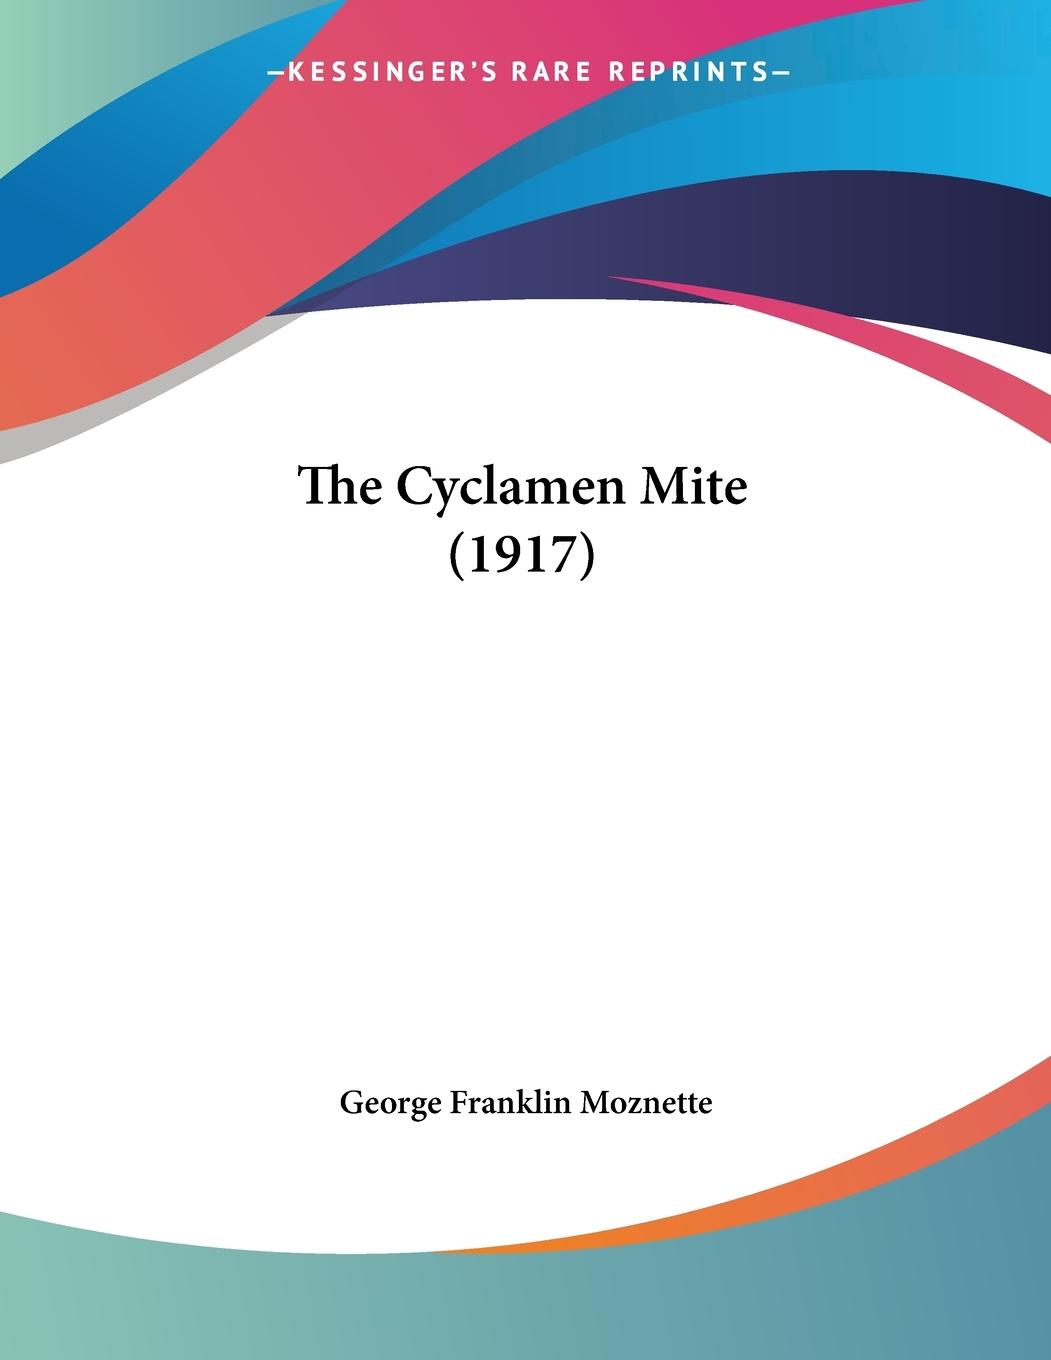 The Cyclamen Mite (1917) - Moznette, George Franklin